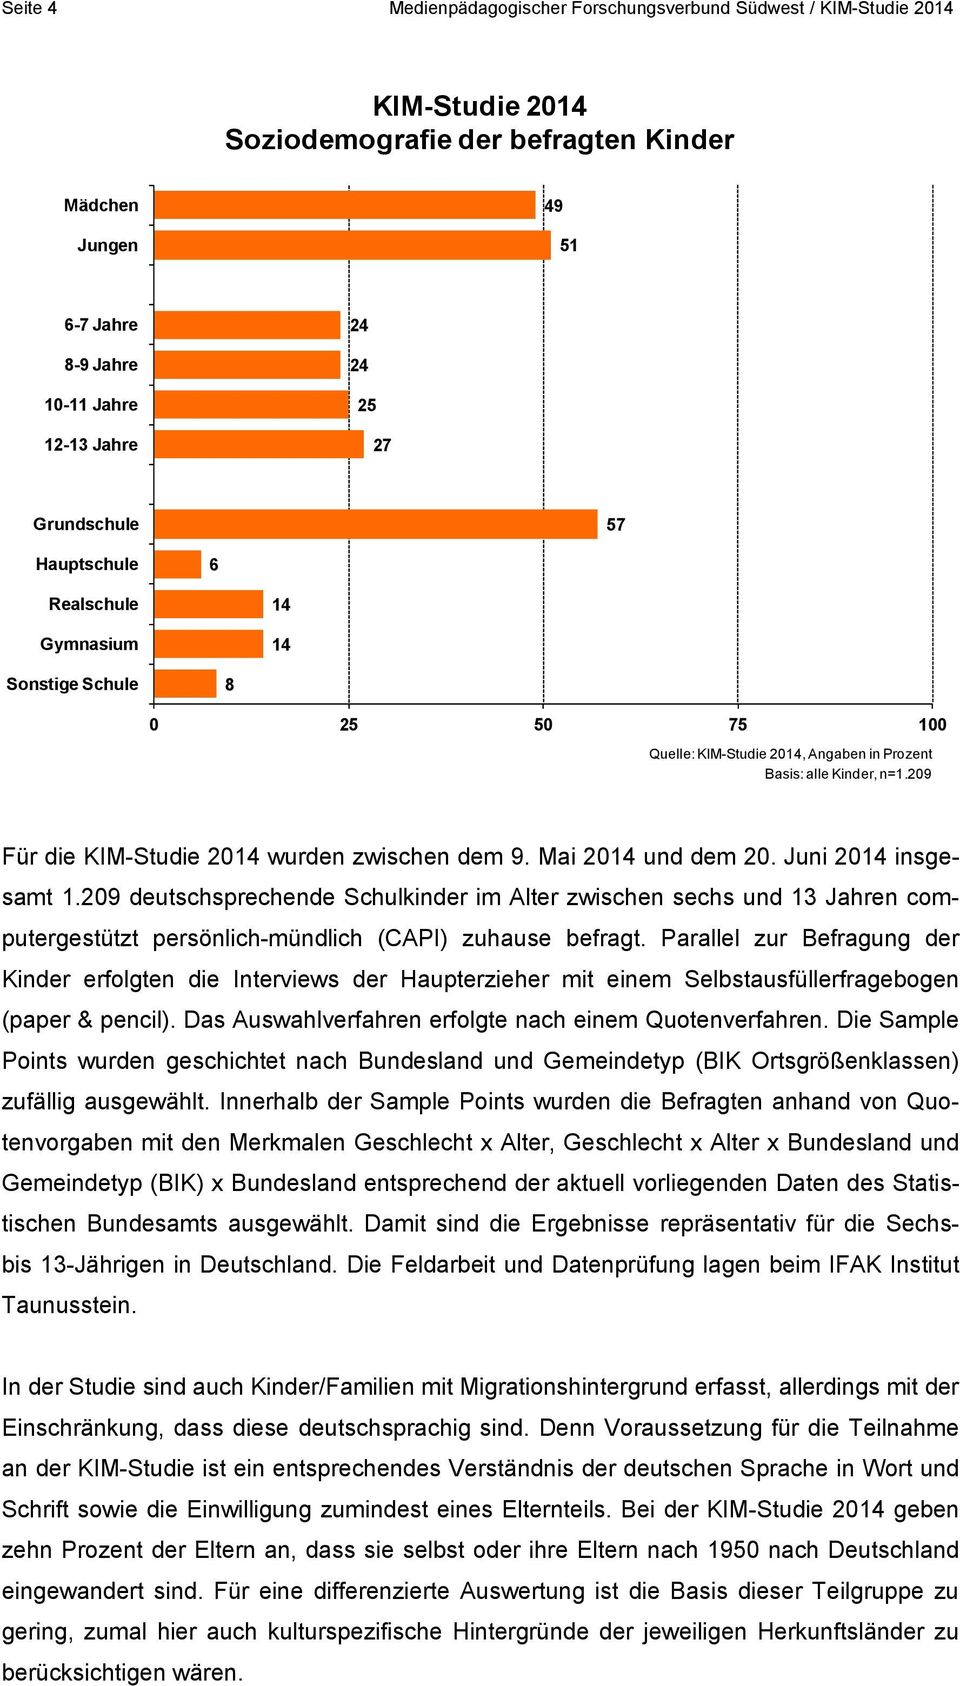 Juni 01 insgesamt 1.09 deutschsprechende Schulkinder im Alter zwischen sechs und 1 Jahren computergestützt persönlich-mündlich (CAPI) zuhause befragt.